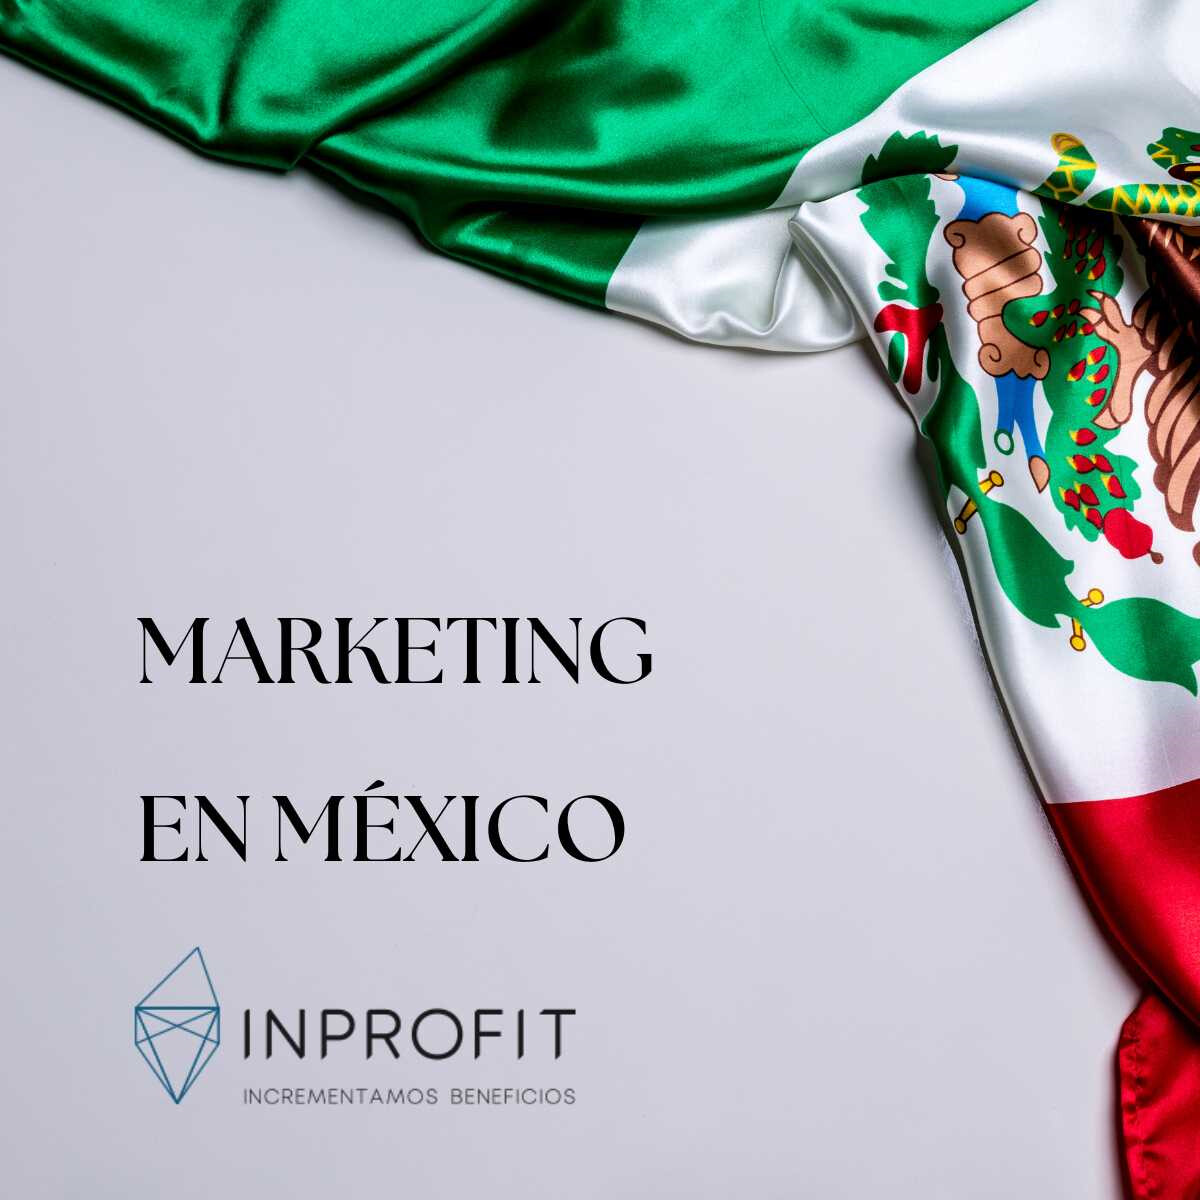 Marketing en México: tendencias en mercadotecnia